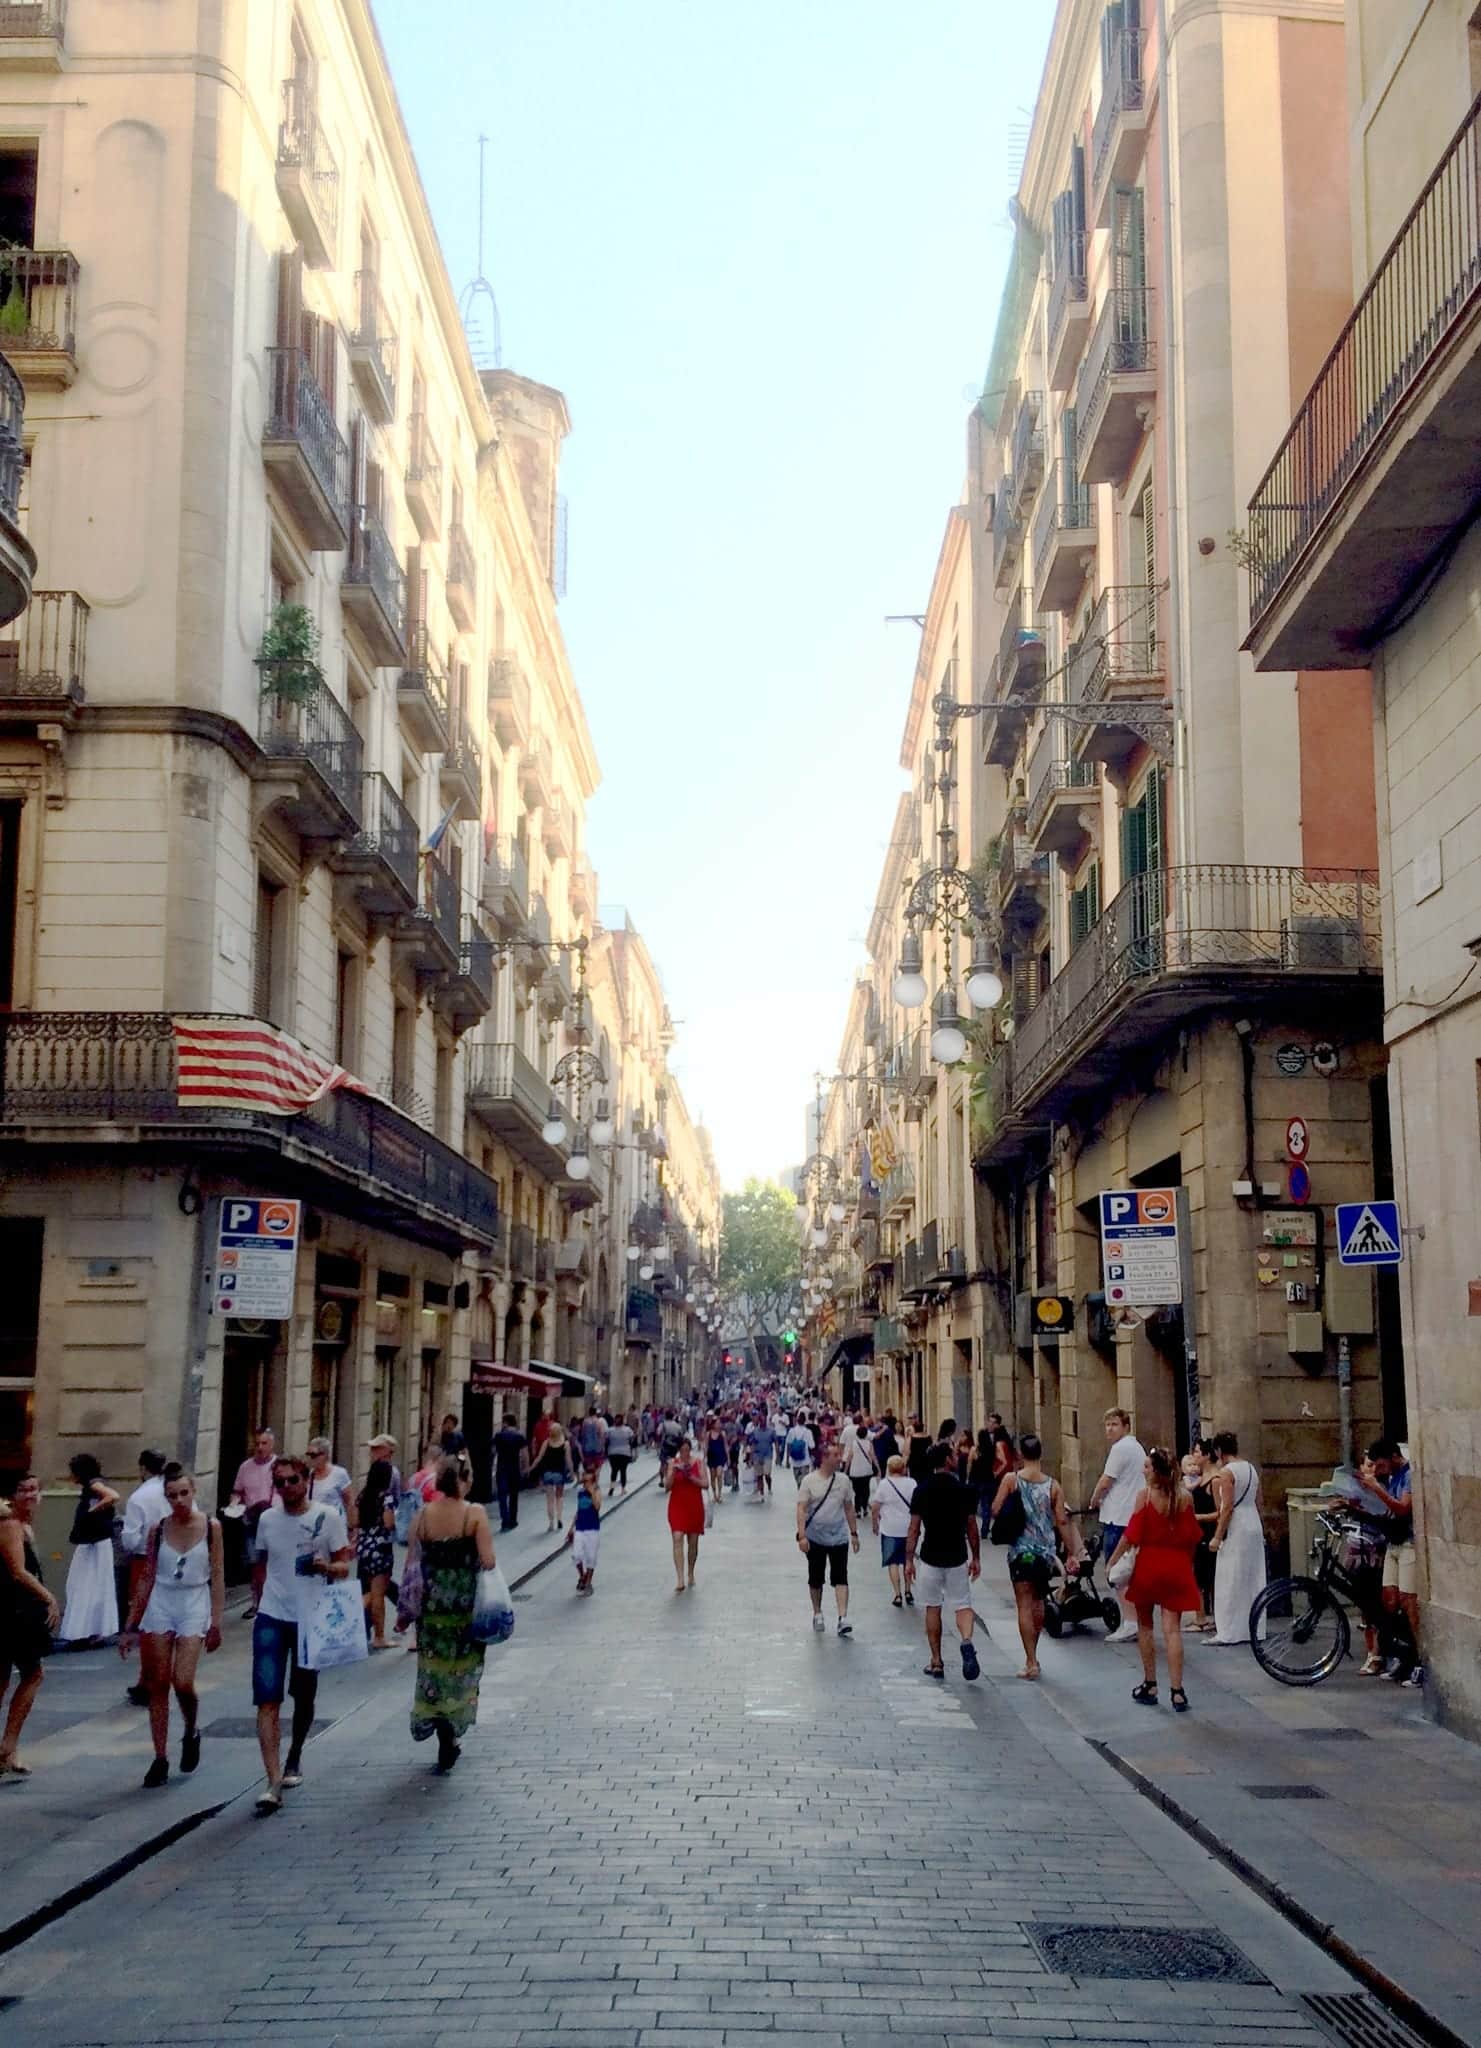 People walking down a pedestrian-only cobblestone street in El Raval, Barcelona.